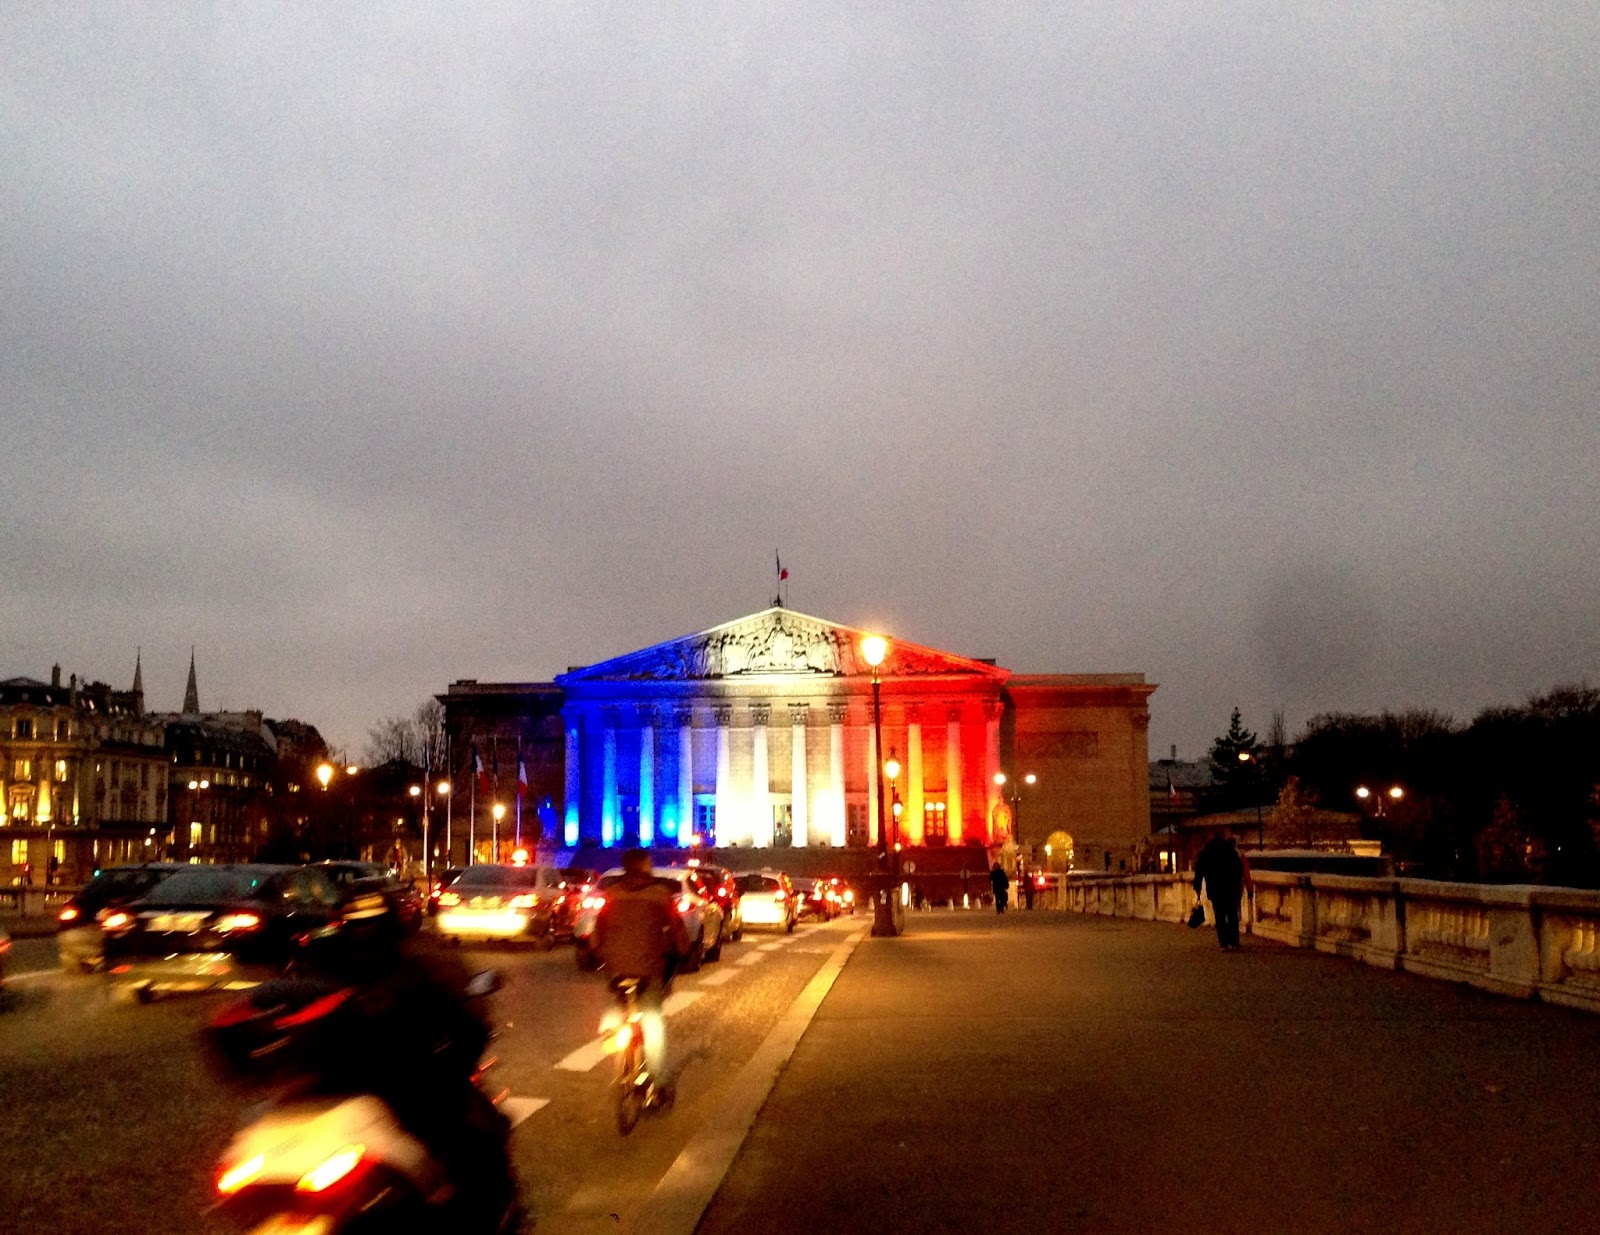 パリからエトセトラ 三色旗にライトアップされた国会議事堂